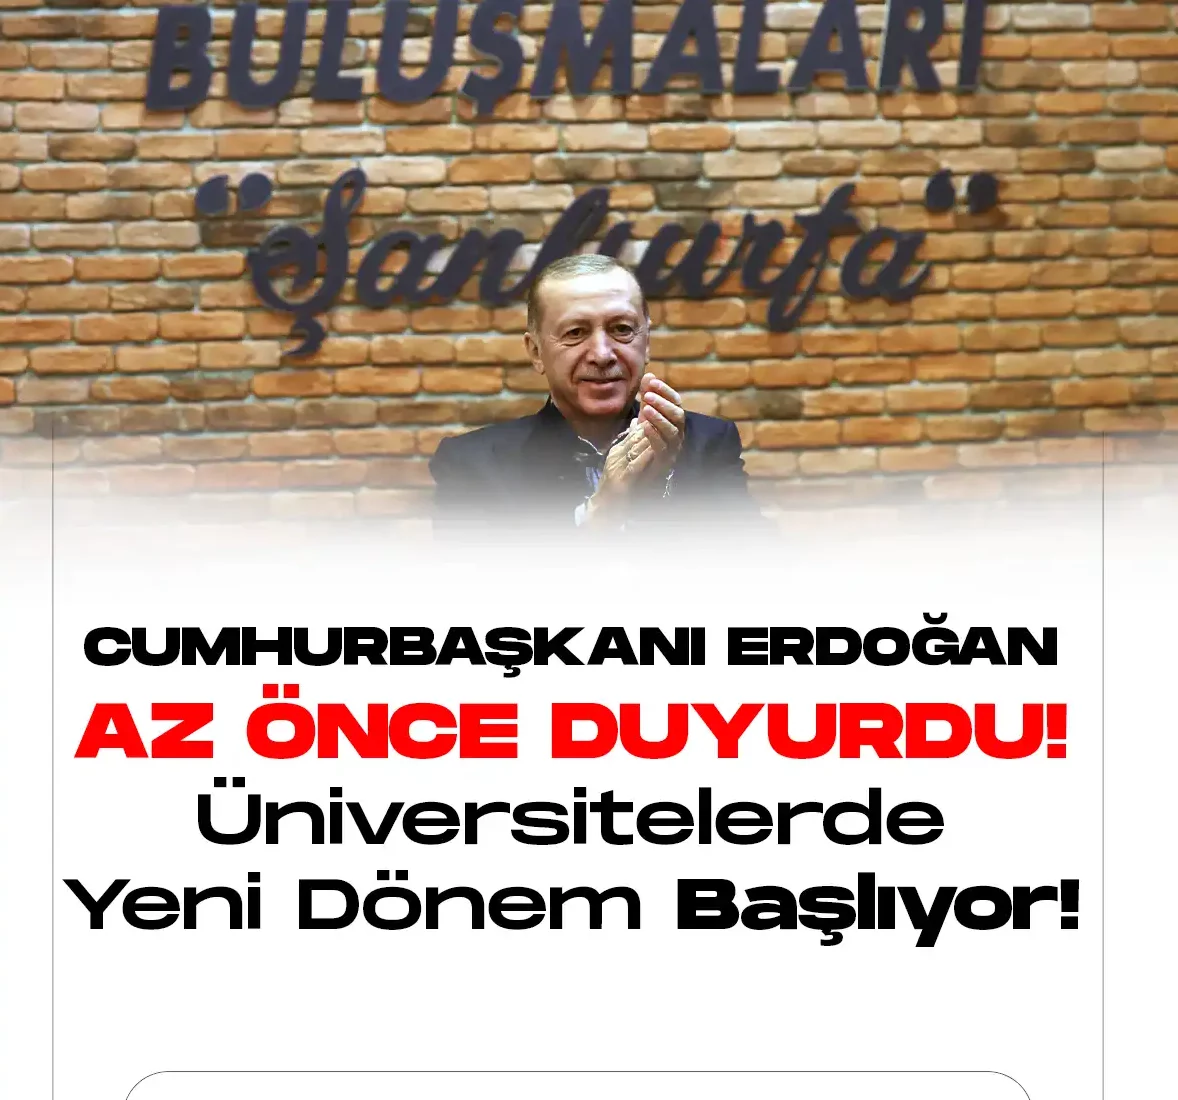 Cumhurbaşkanı Recep Tayyip Erdoğan, üniversitelerde formasyon eğitimi ile ilgili son dakika açıklamaları yaptı.